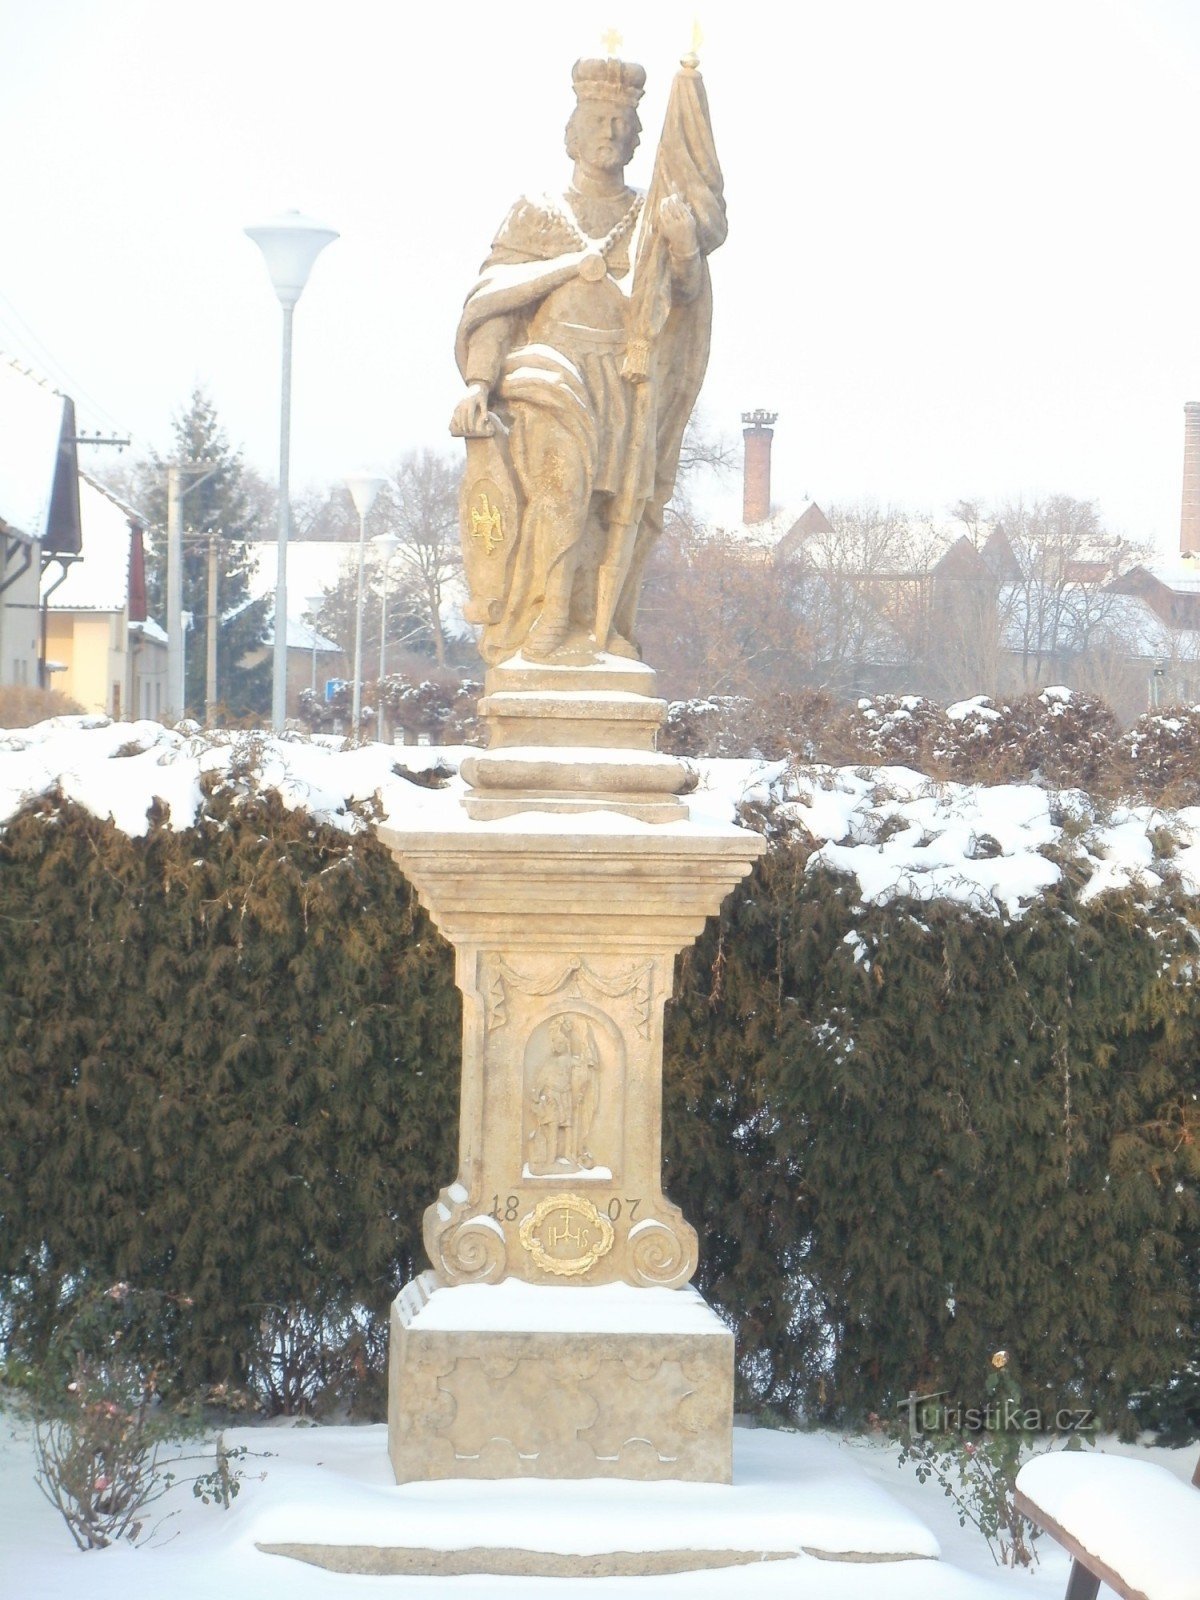 Chlumec nad Cidlinou - et monument med en statue af St. Wenceslas